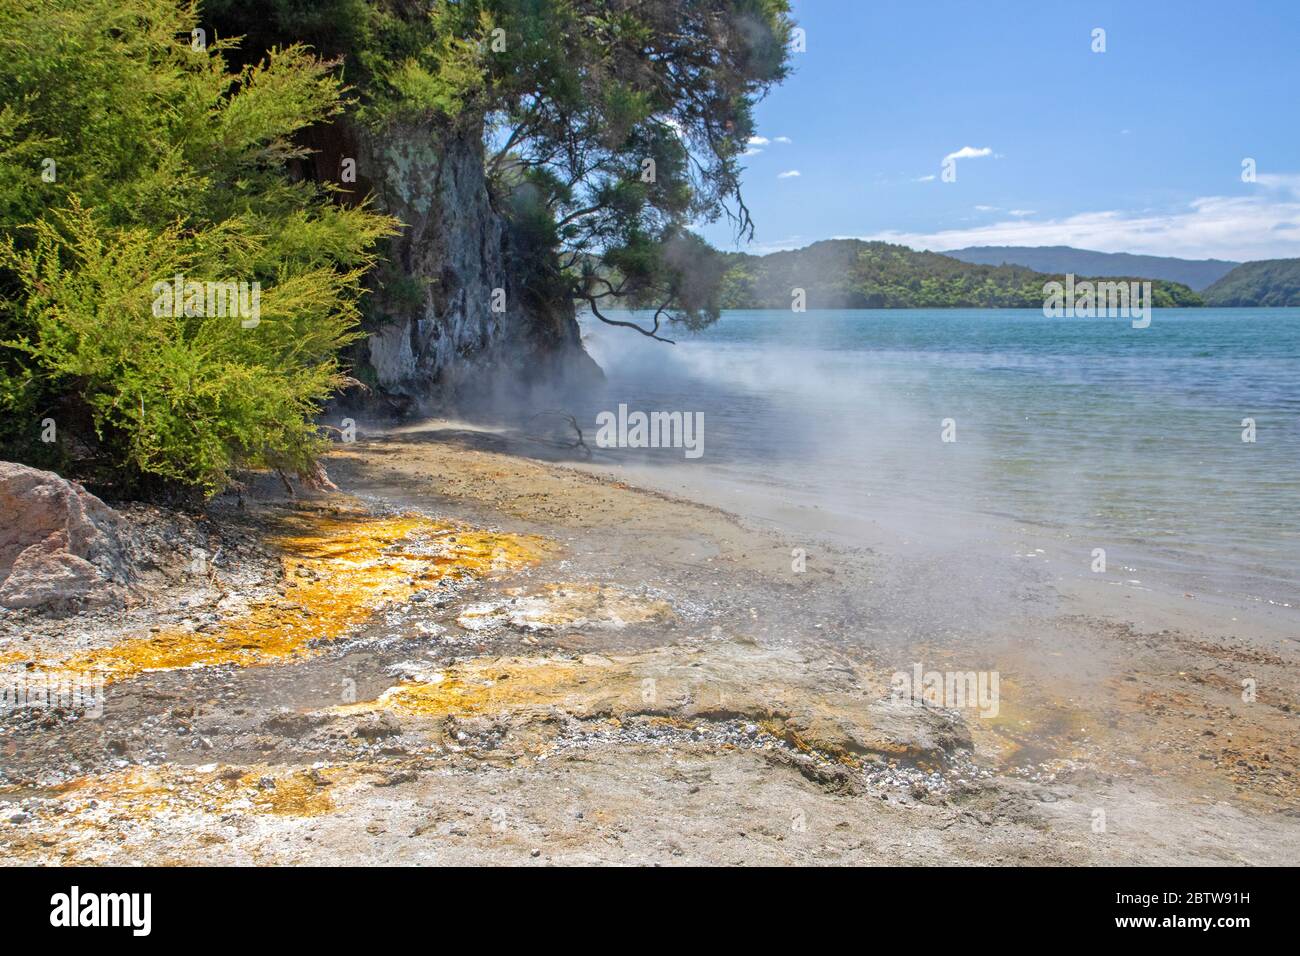 Hot Water Beach on Lake Tarawera Stock Photo